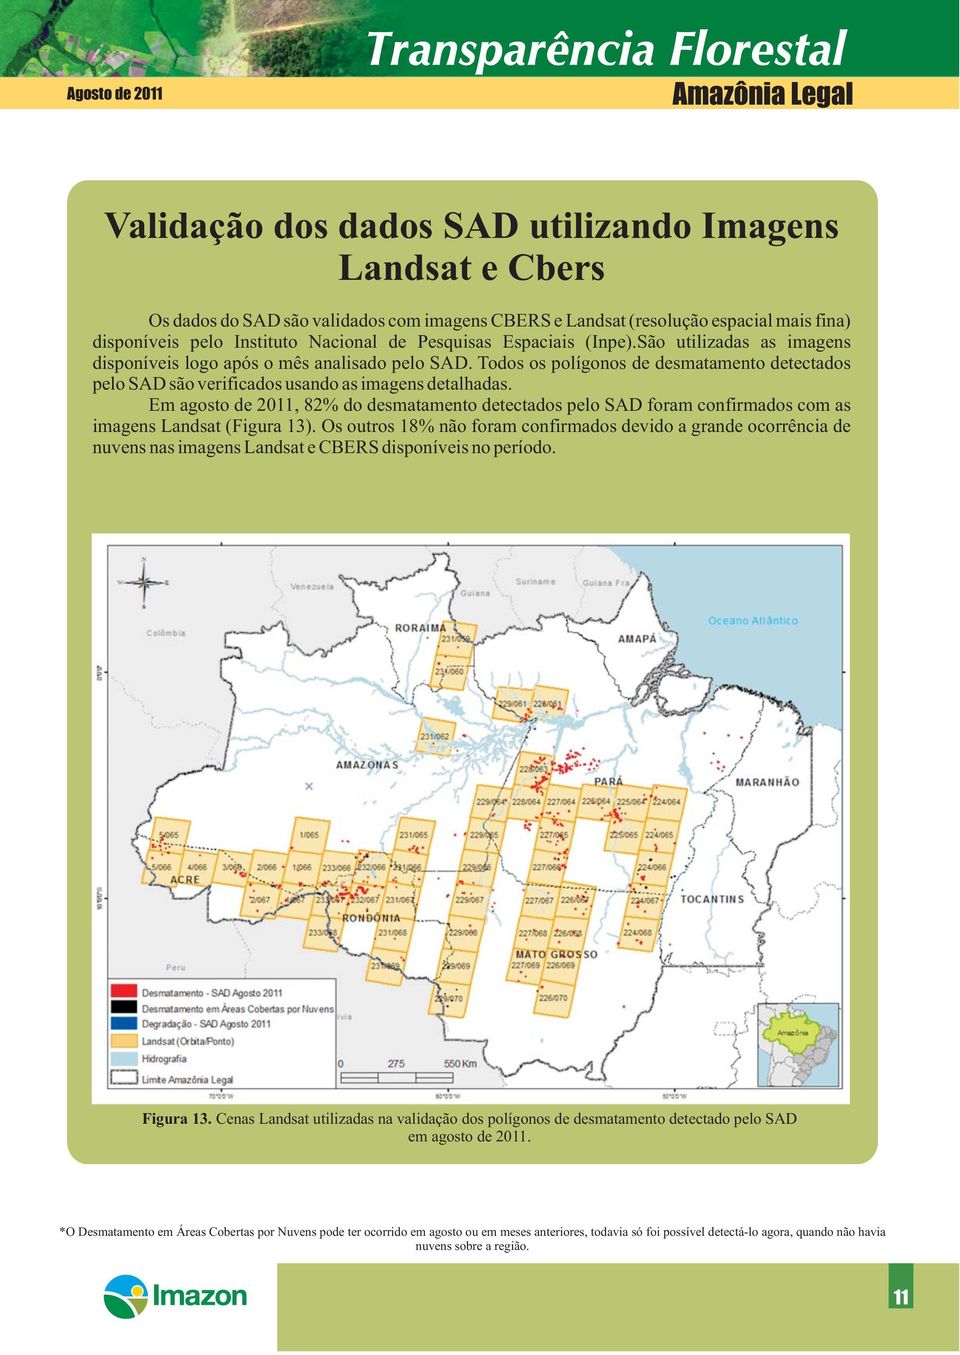 Todos os polígonos de desmatamento detectados pelo SAD são verificados usando as imagens detalhadas.